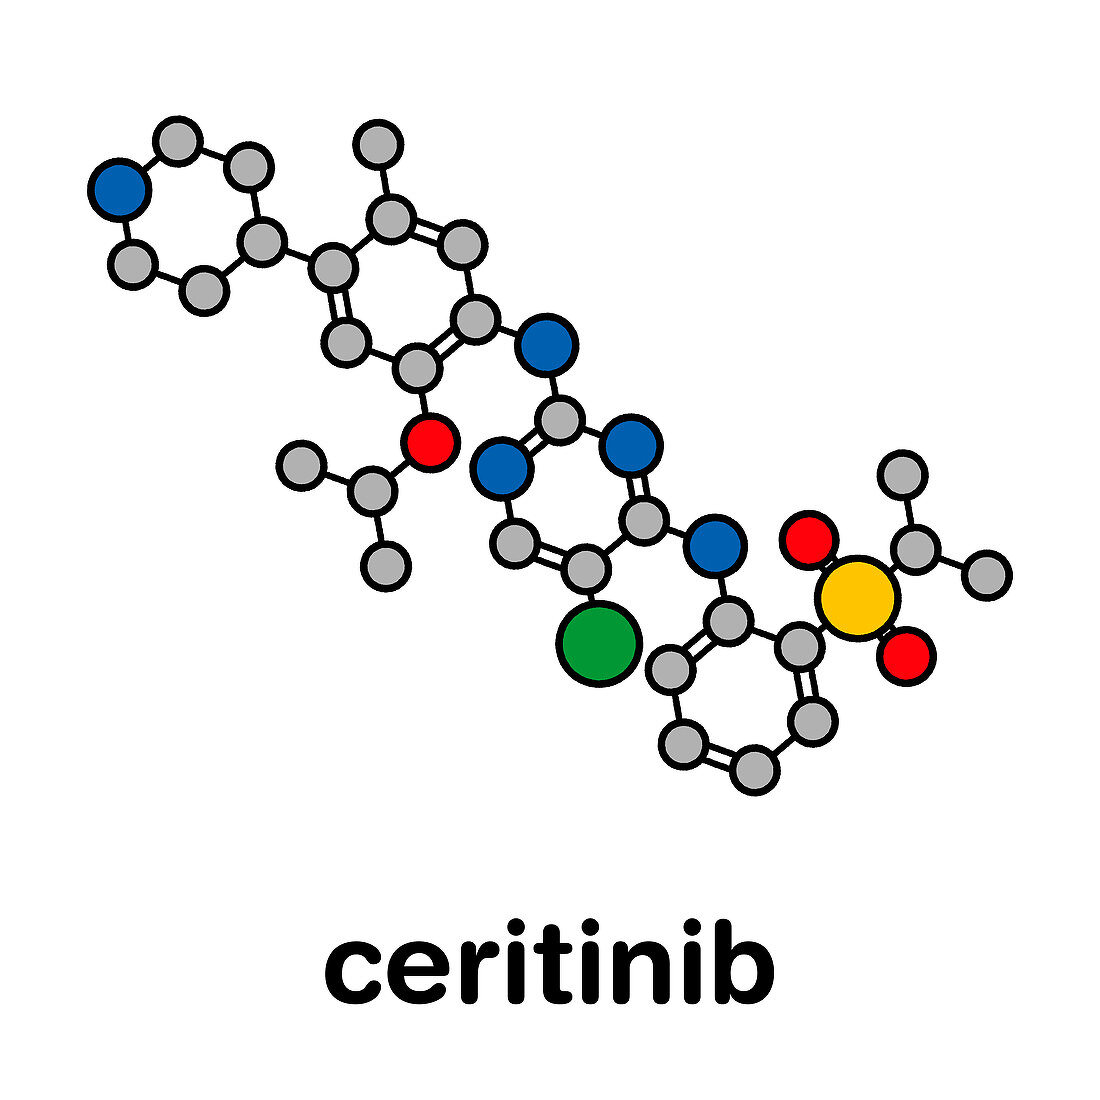 Ceritinib cancer drug, molecular model